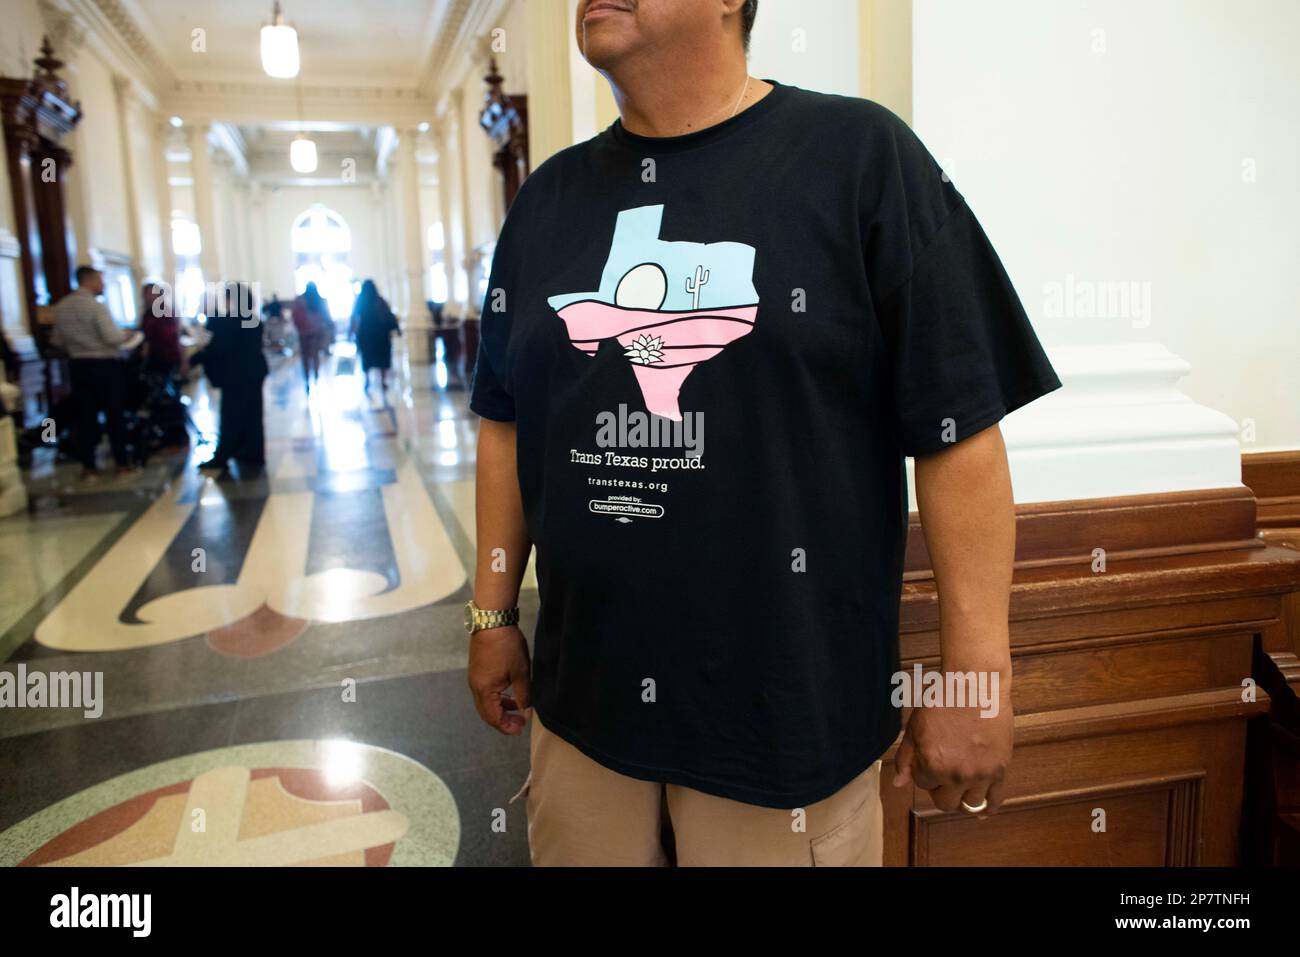 Un homme qui soutient les questions transgenres attend dans la rotonde du Capitole alors que son groupe se réunit pour faire pression sur les législateurs. Crédit : Bob Daemmrich/Alay Live News Banque D'Images